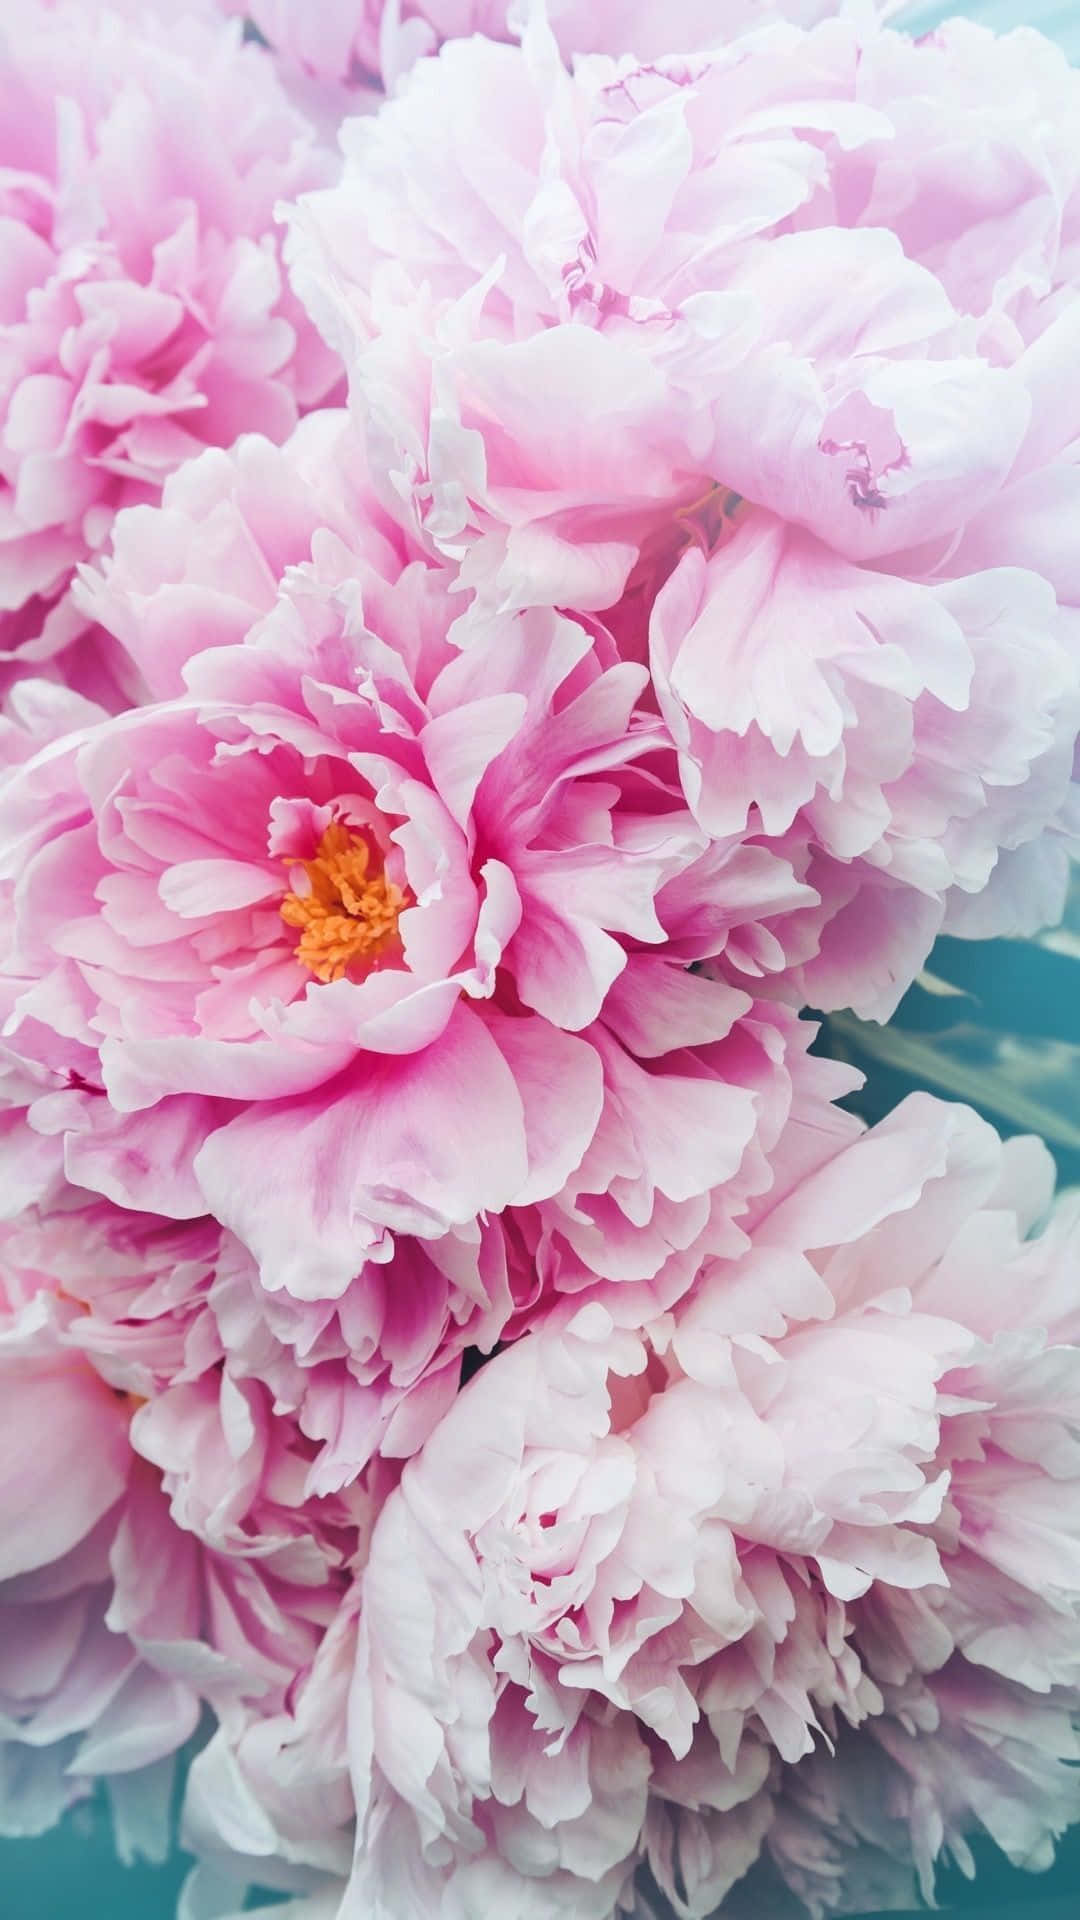 Et smukt pæonblomst i fuldt flor på en Iphone-baggrund. Wallpaper